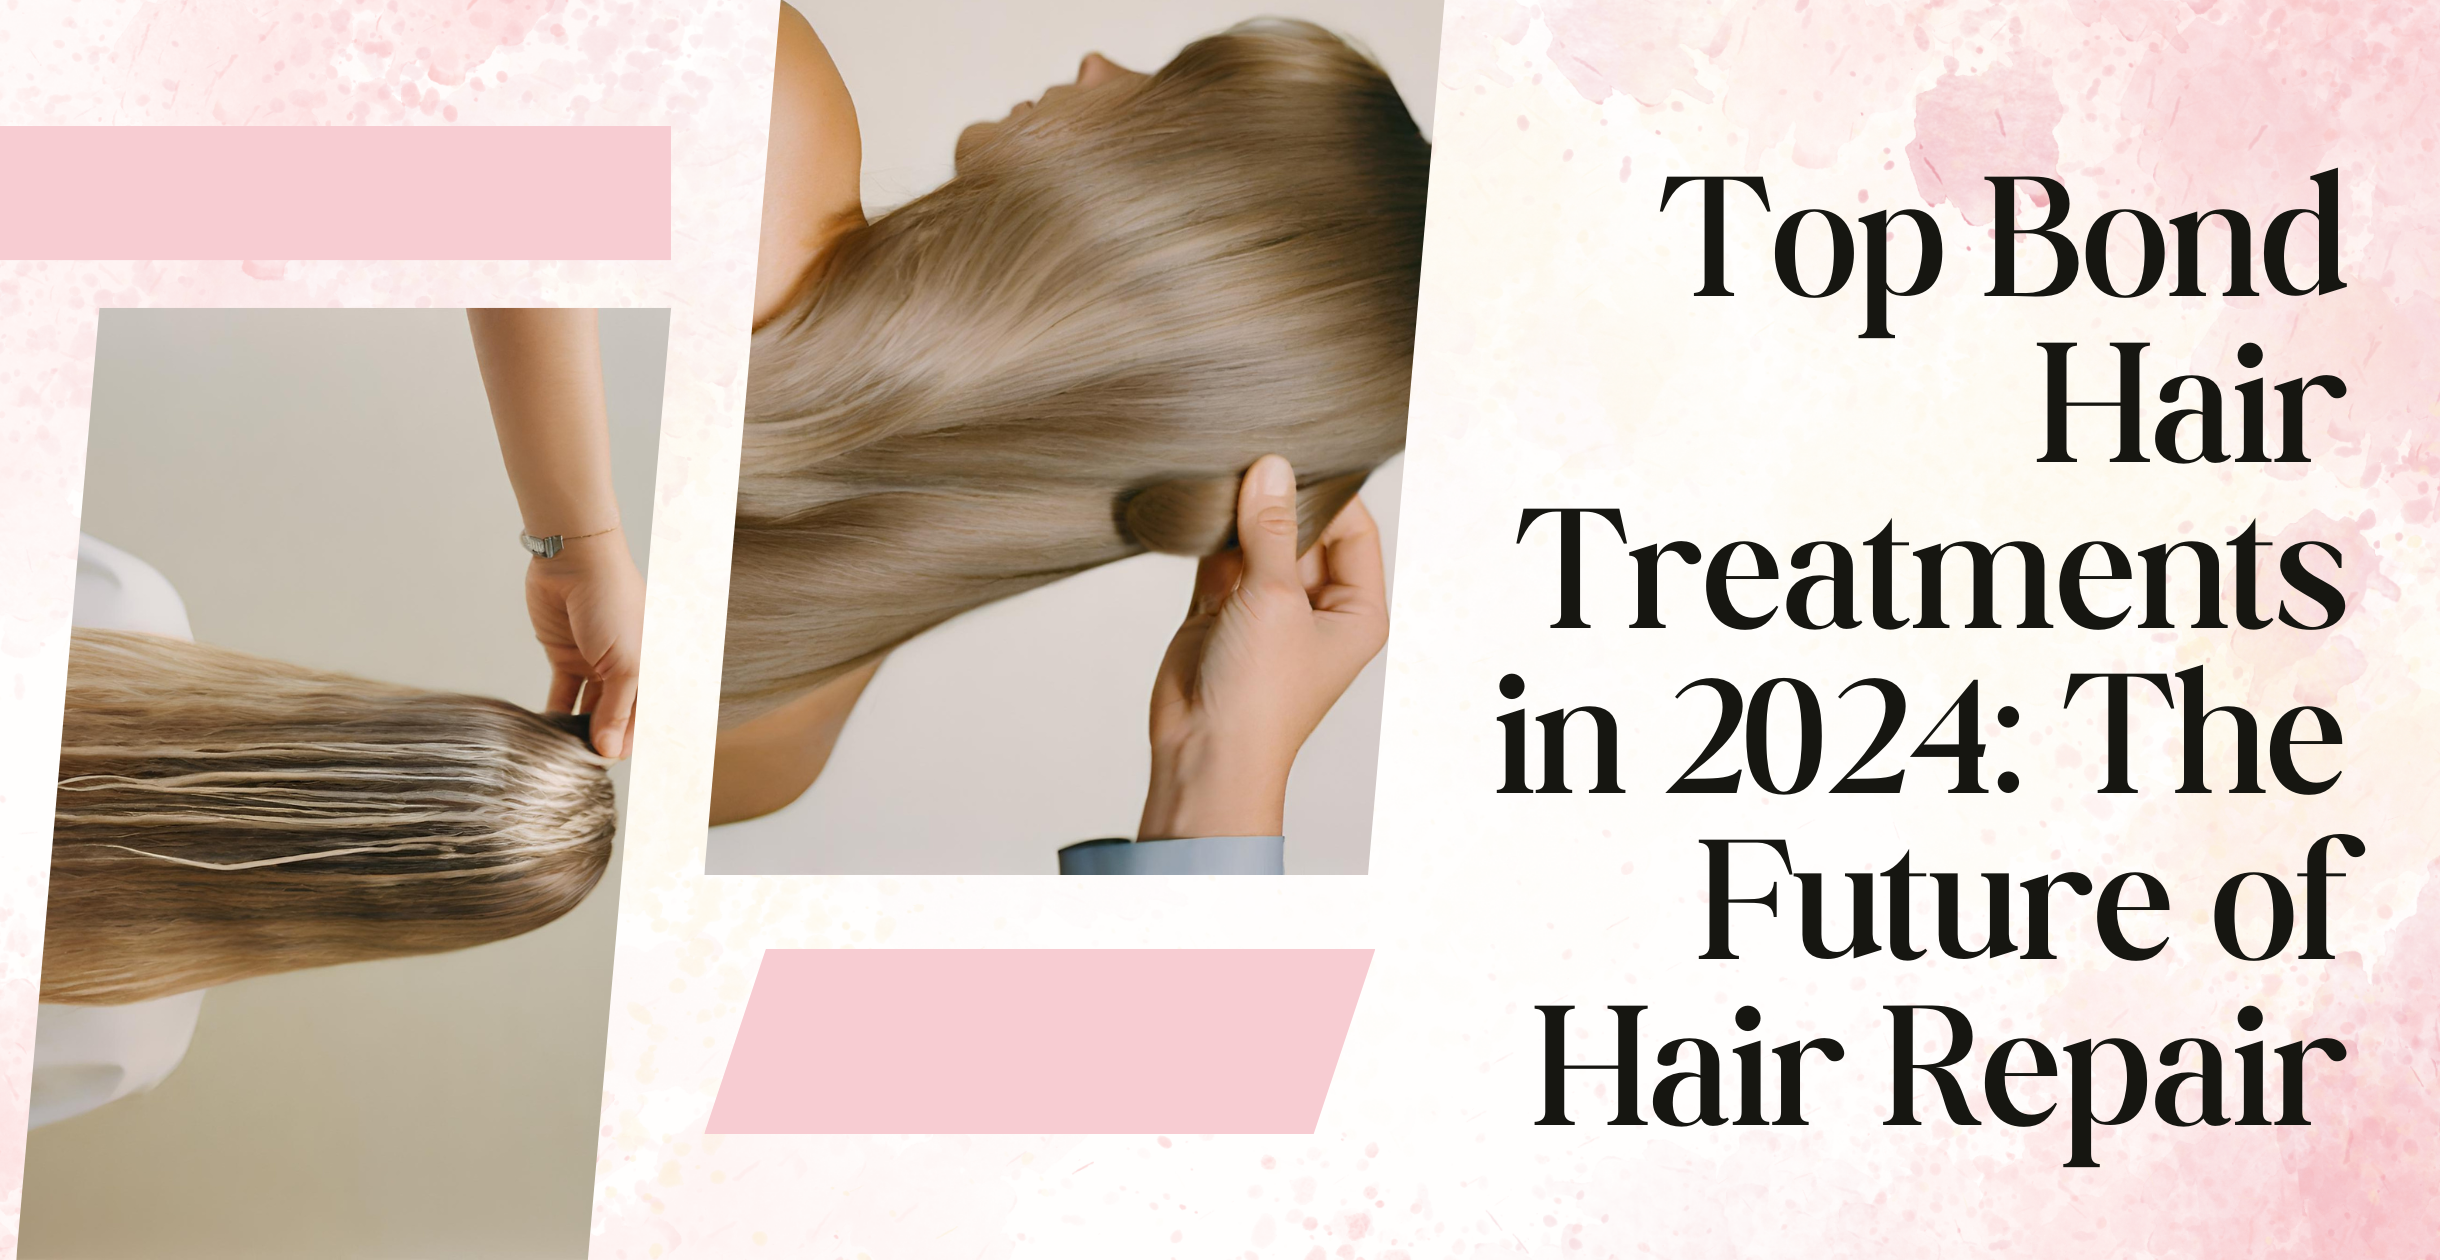 Top Bond Hair Treatments in 2024: The Future of Hair Repair